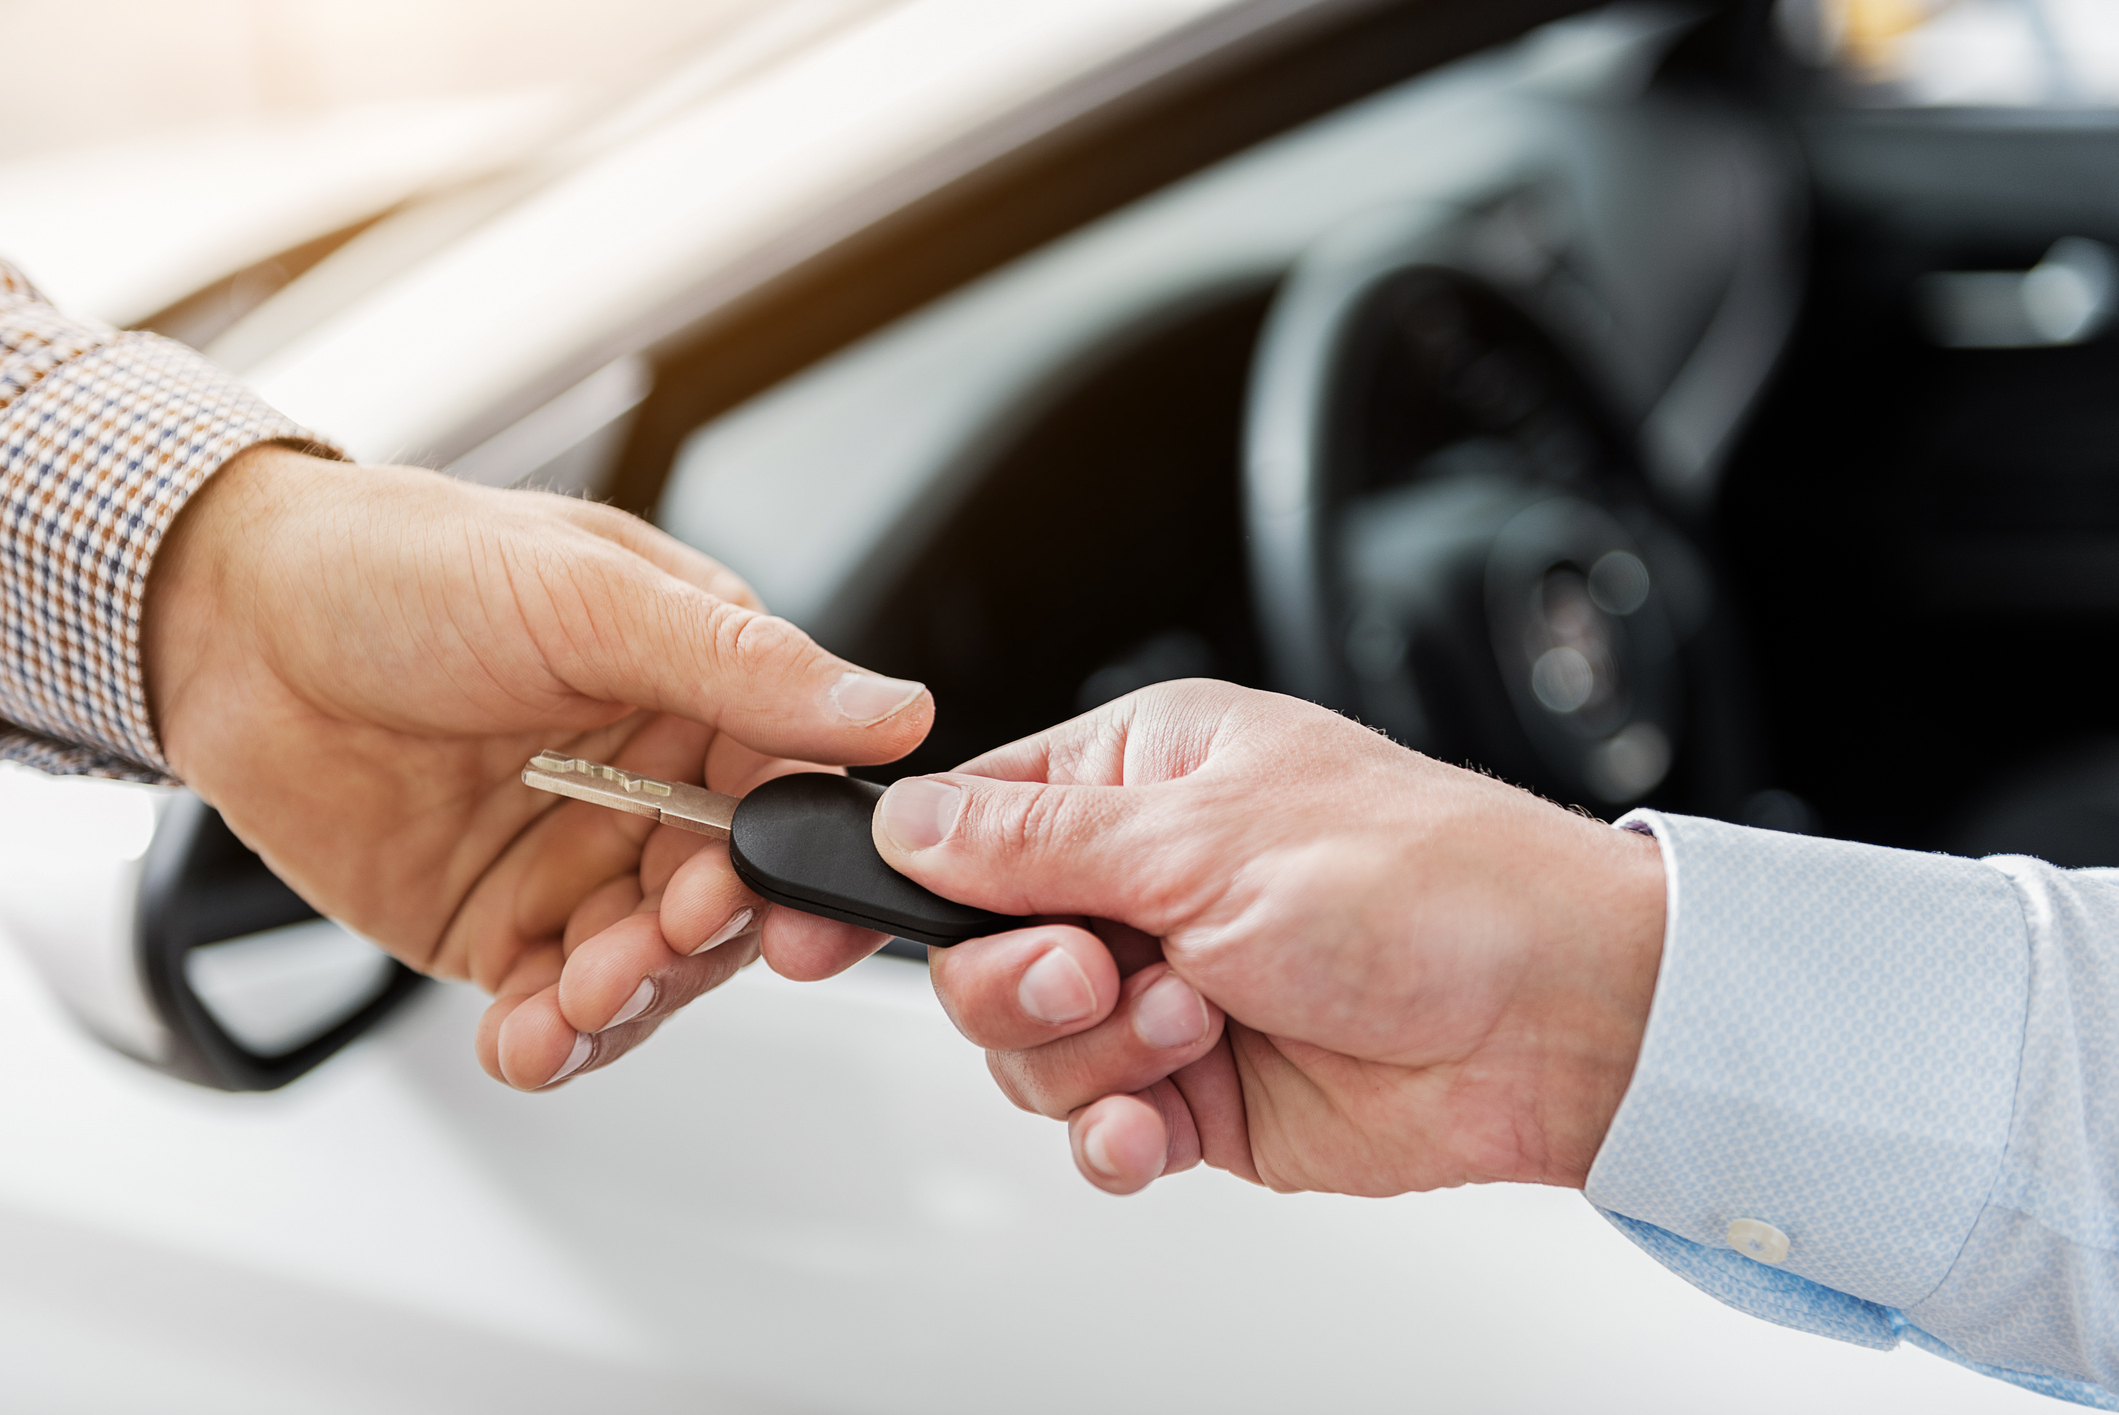 Imagem de um pessoa entregando a chave de um carro para outra pessoa